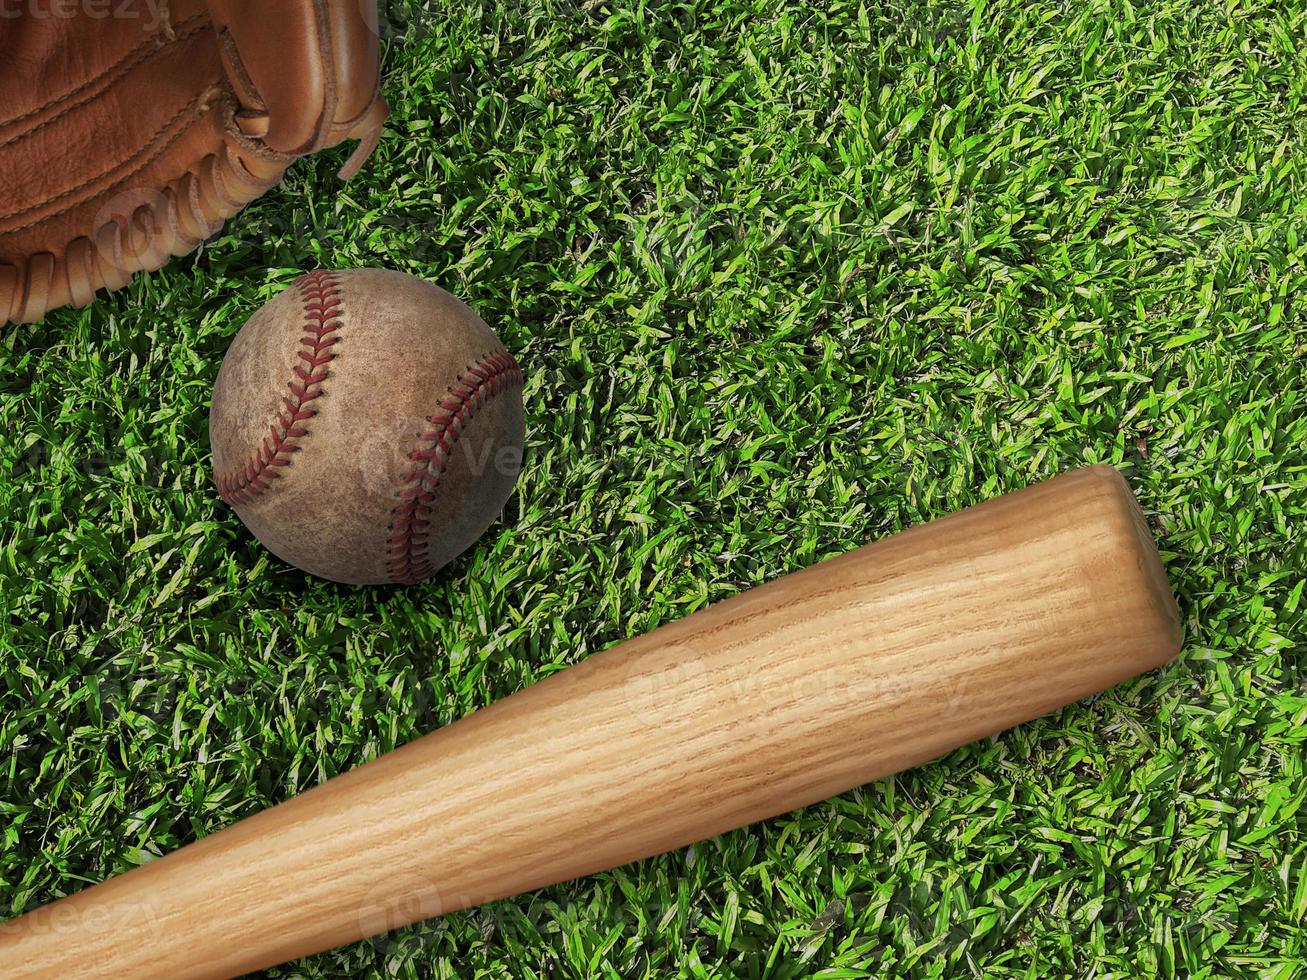 honkbal, handschoen, bal en knuppel op veld foto